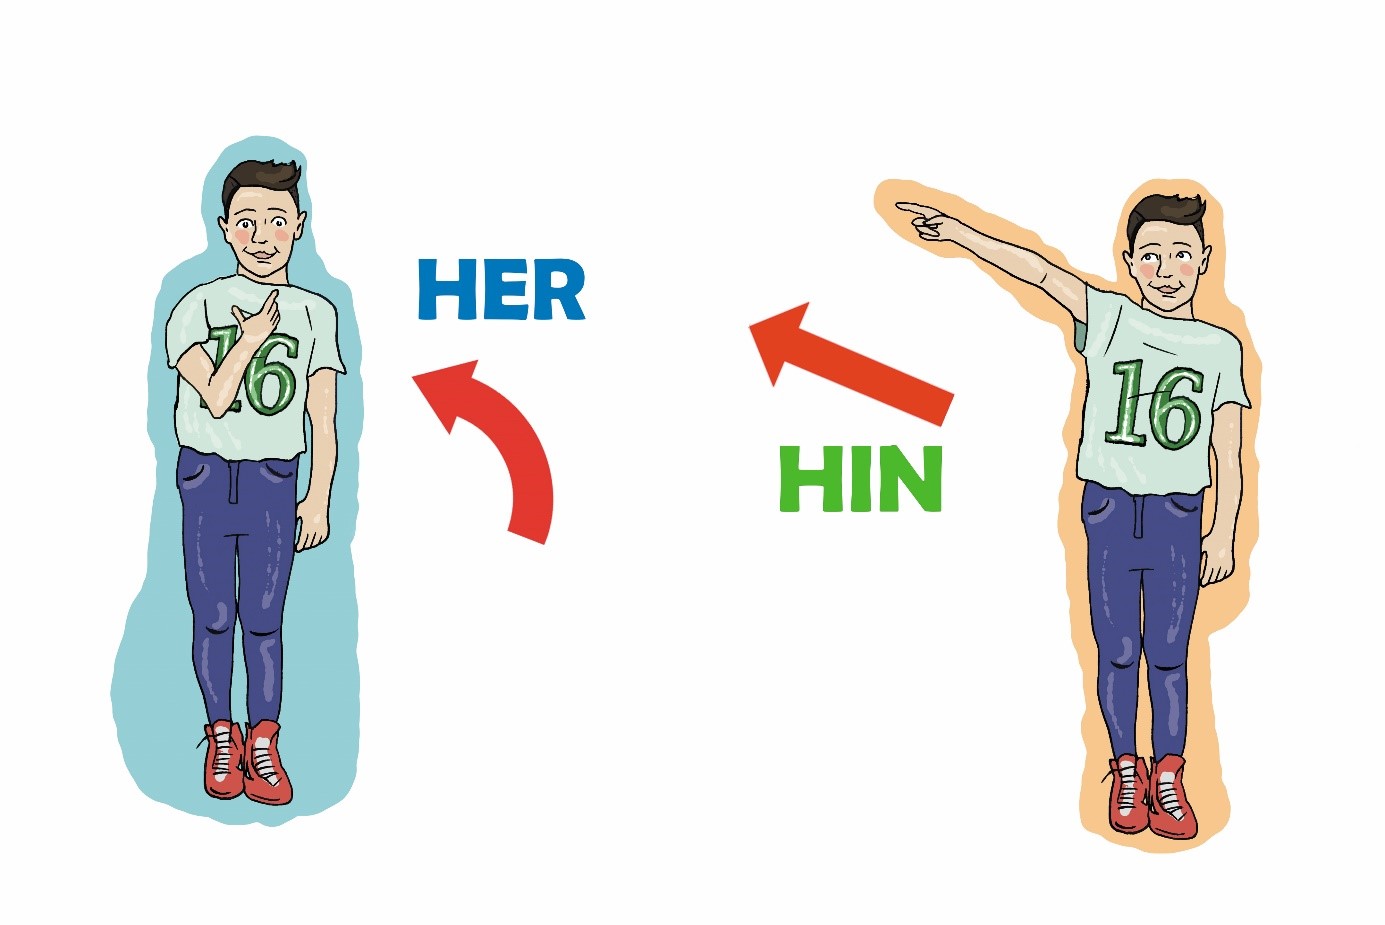 Na lijevoj je slici muška osoba čija ruka pokazuje prema sebi, a na desnoj slici muška osoba ima ispruženu ruku kojom pokazuje od sebe.